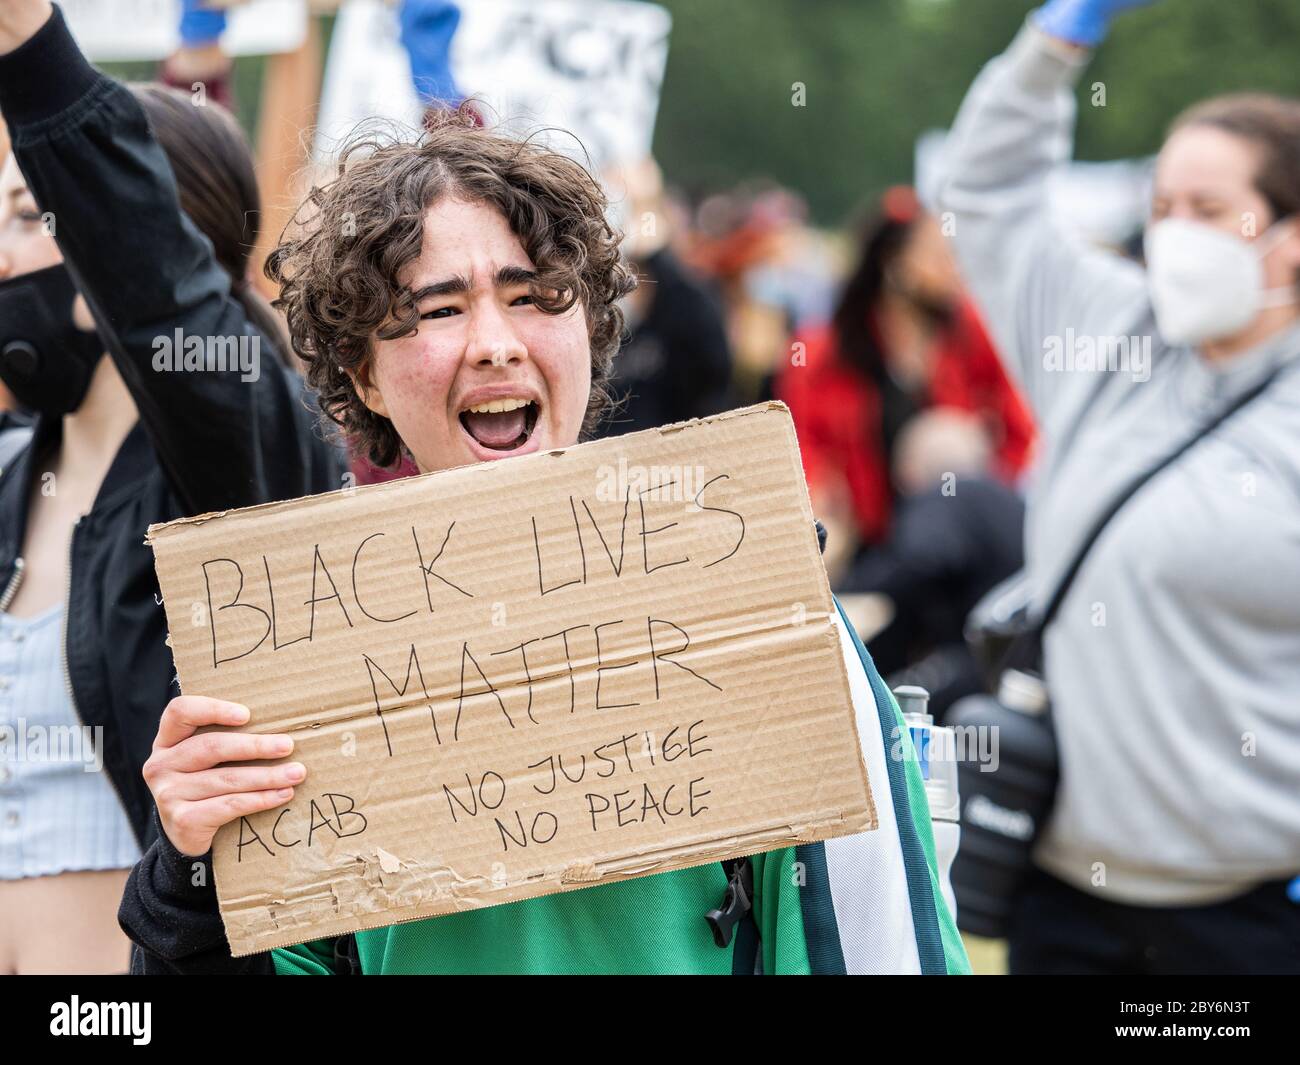 Londra, Regno Unito, 3 giugno 2020 - i manifestanti della materia Black Lives marciarono da Hyde Park al Parlamento dopo la morte in custodia di George Floyd. Foto Stock